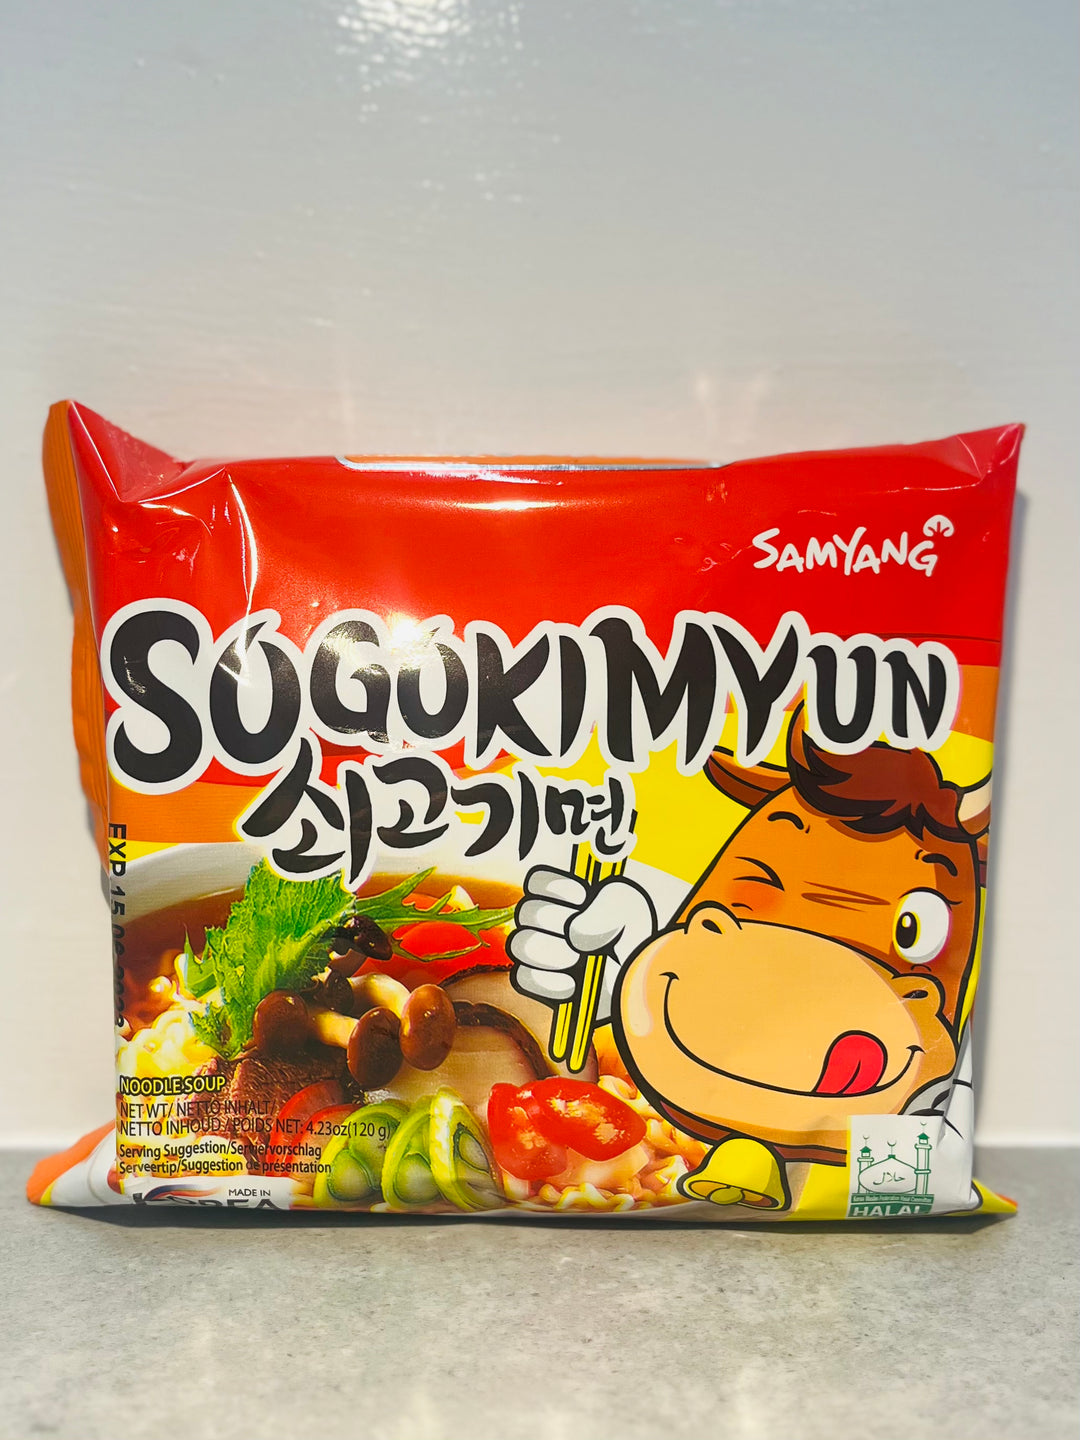 Samyang Sogokimyun Beef Ramen Noodles